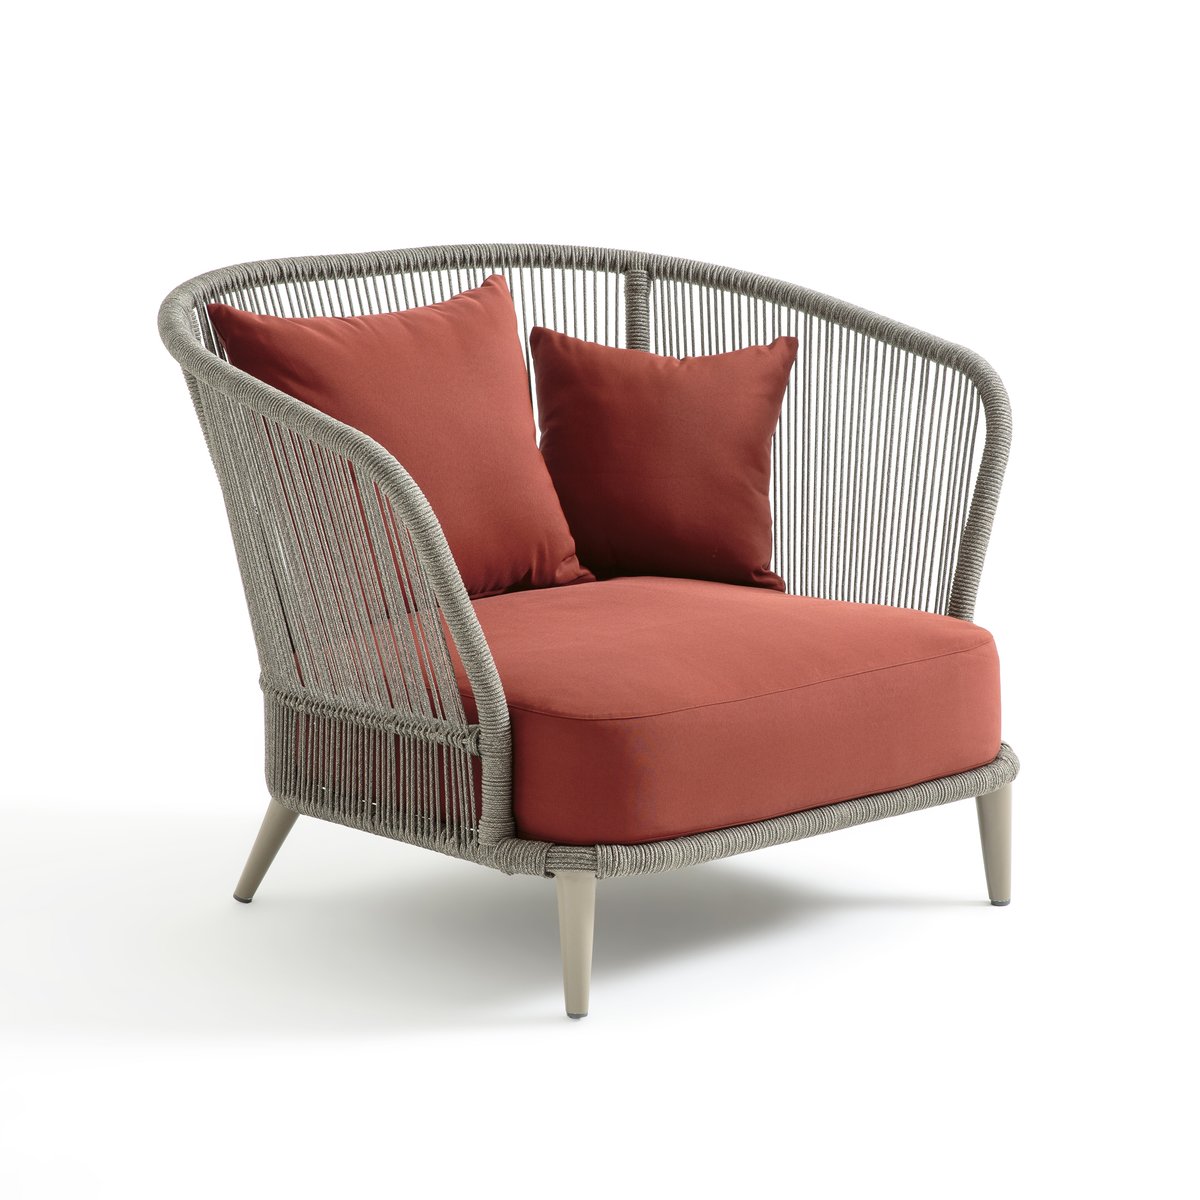 Кресло La Redoute Для сада дизайн Э Галлины Cestino единый размер каштановый - фото 2